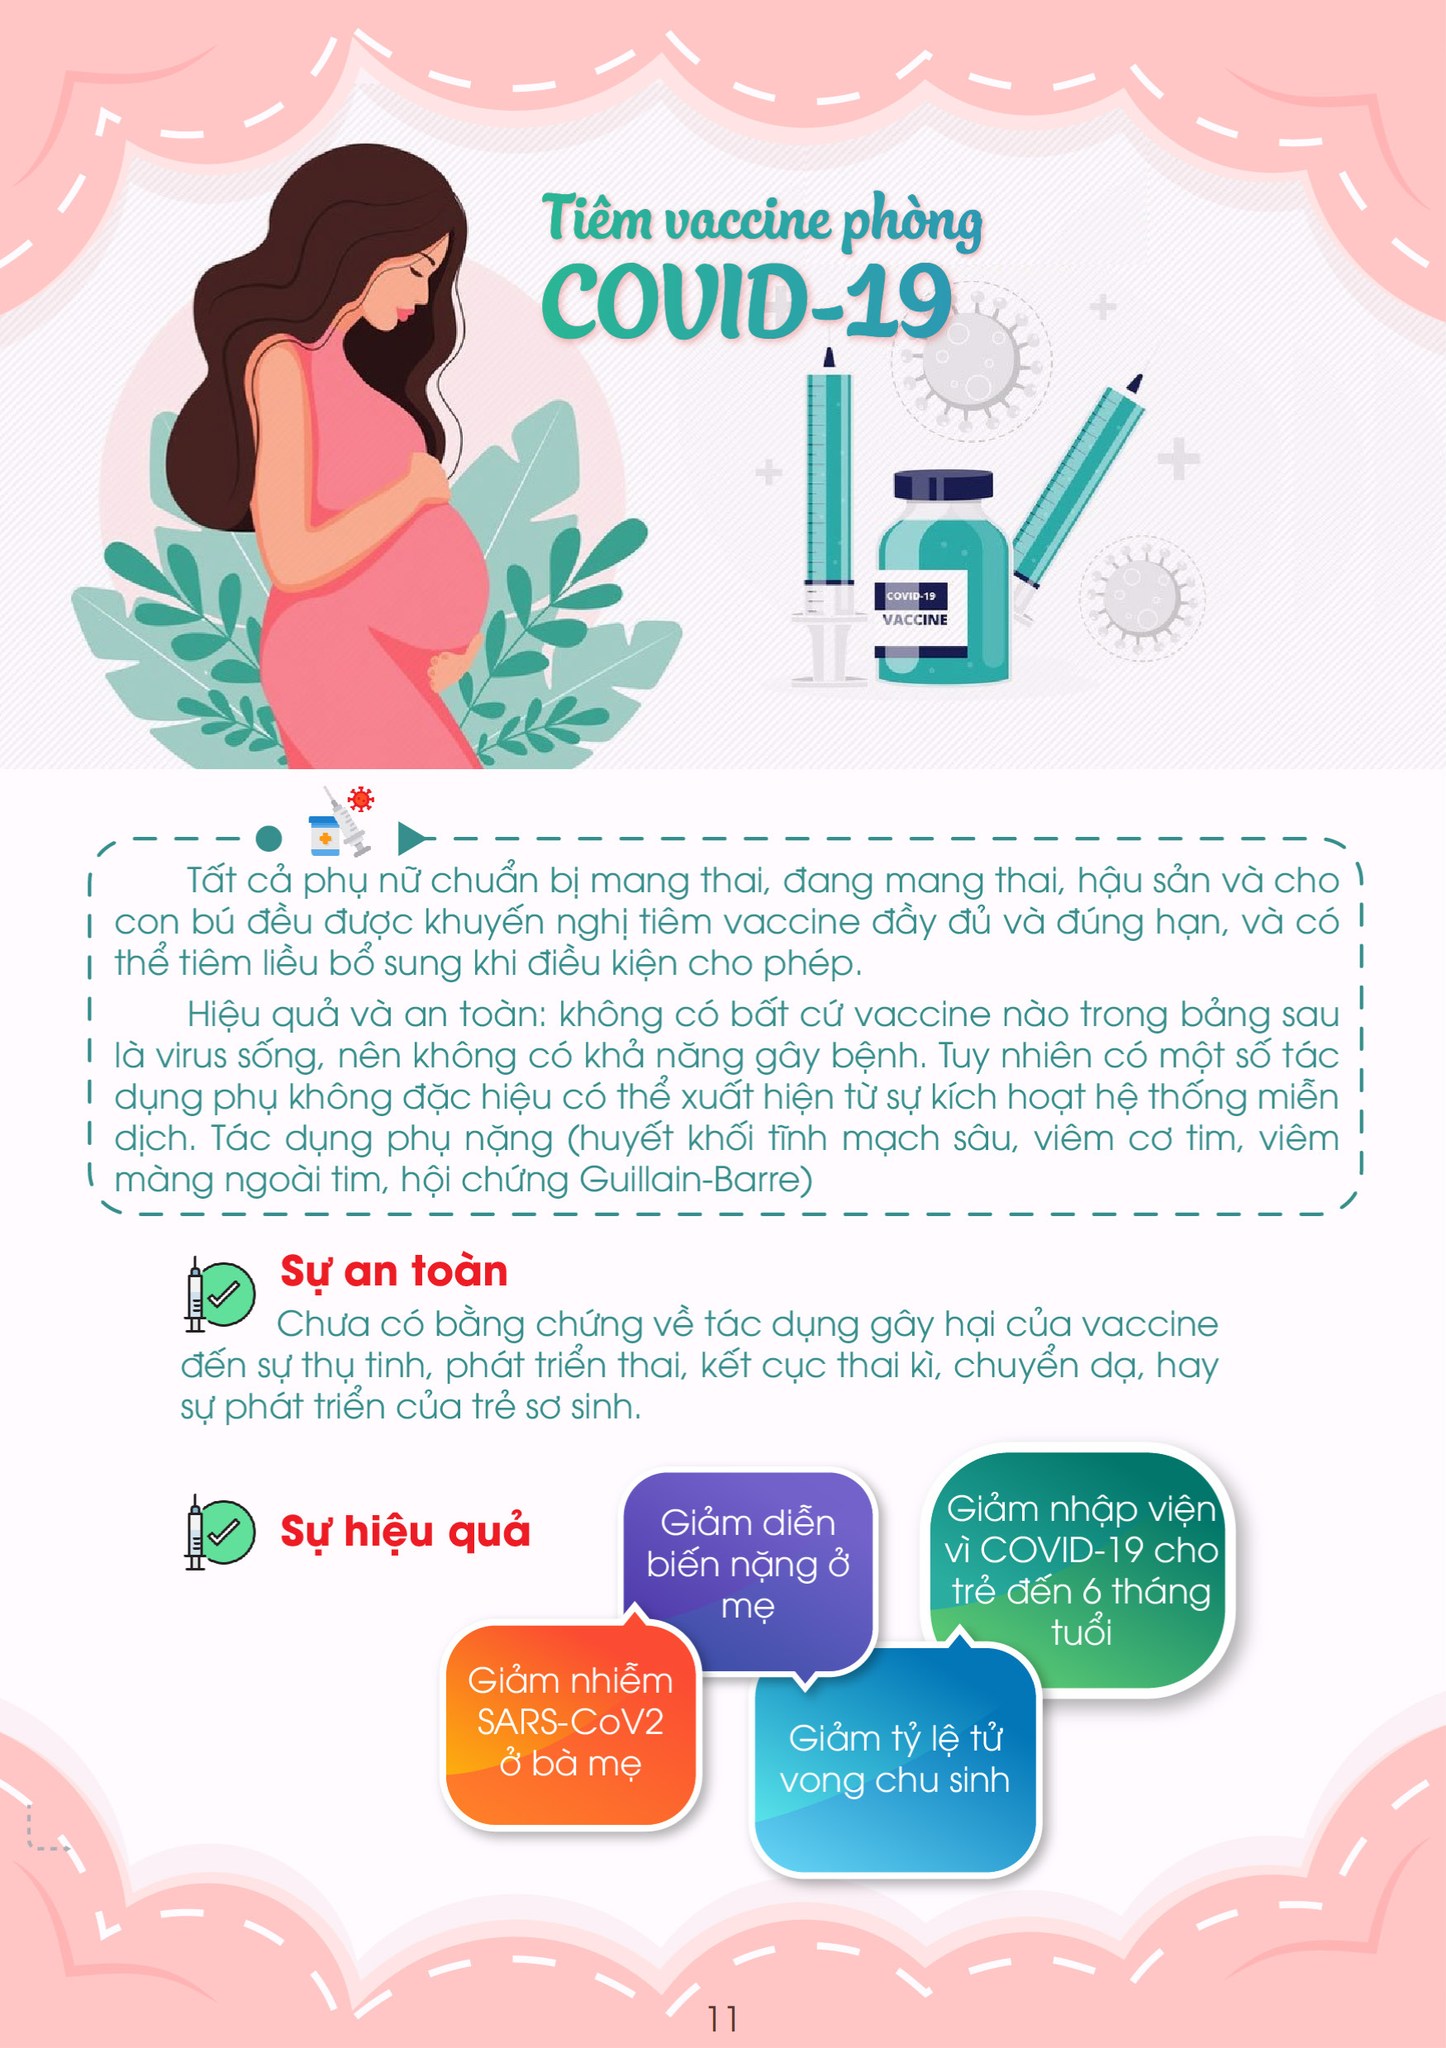 Chuyên gia hướng dẫn chăm sóc thai phụ trong dịch COVID-19 - Ảnh 12.